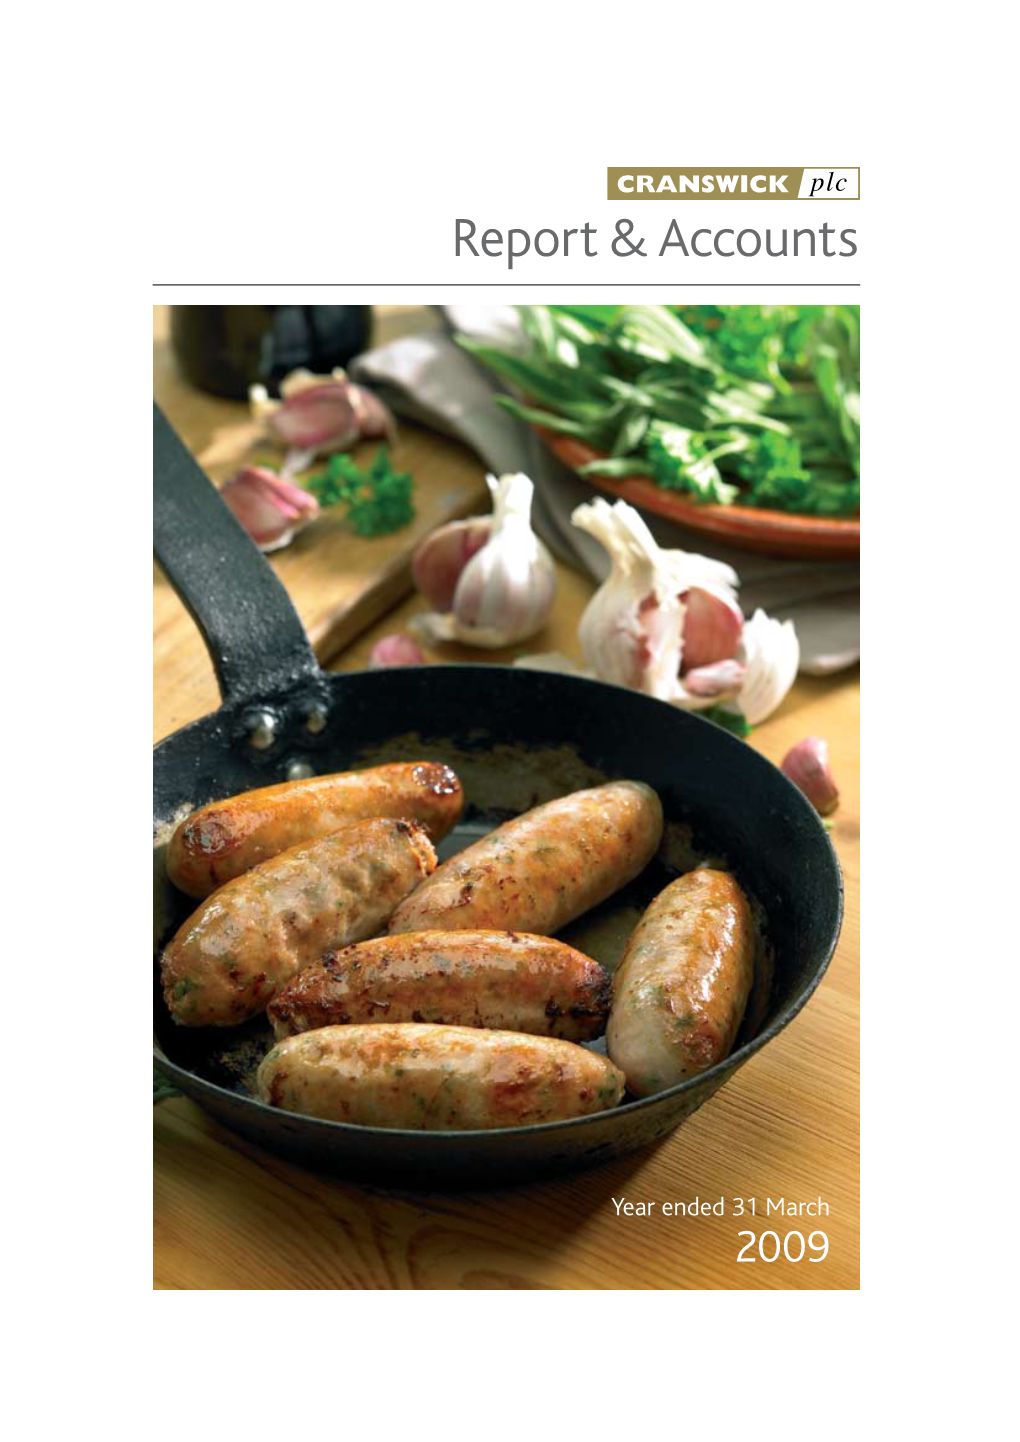 Cranswick Plc Report & Accounts 2009